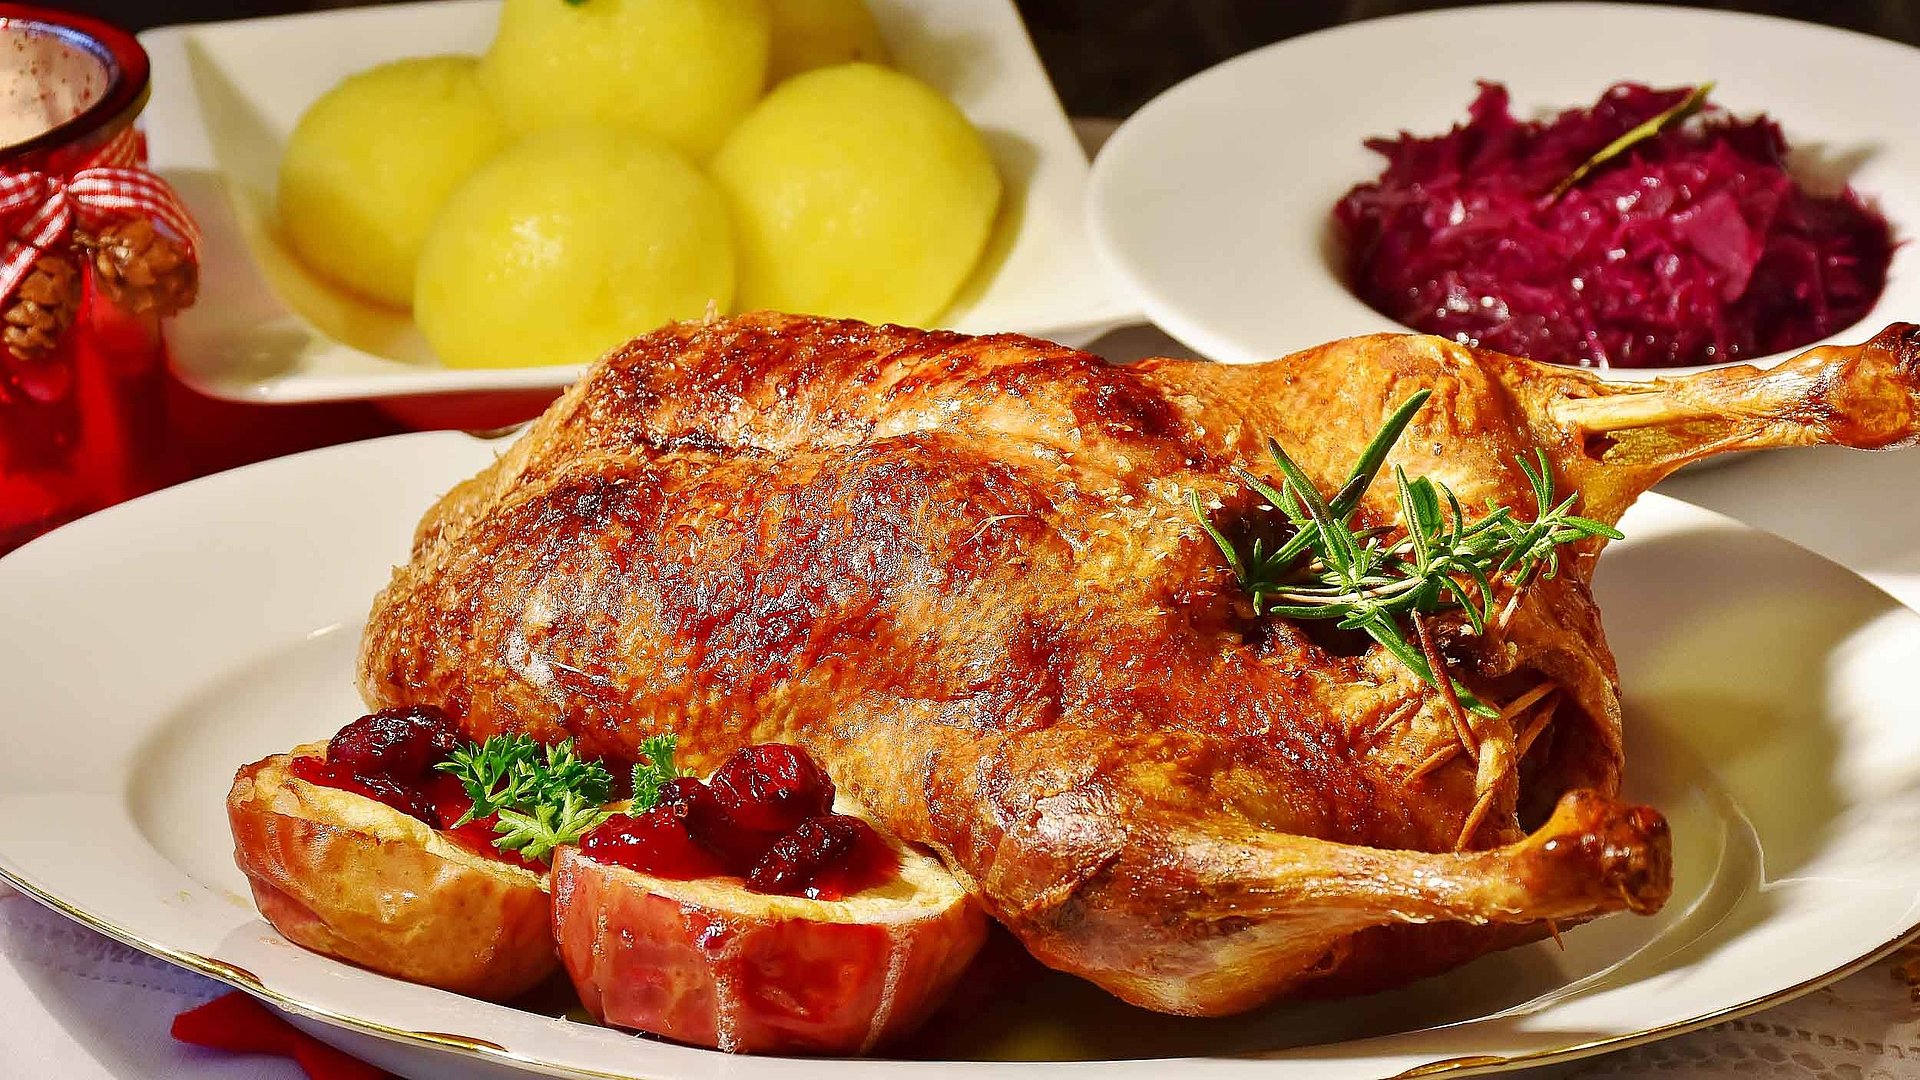 Spezielle Gastronomie Angebote im Fränkischen Seenland - Teller mit frischer Ente und separaten Tellern jeweils mit Knödeln und Rotkohl 